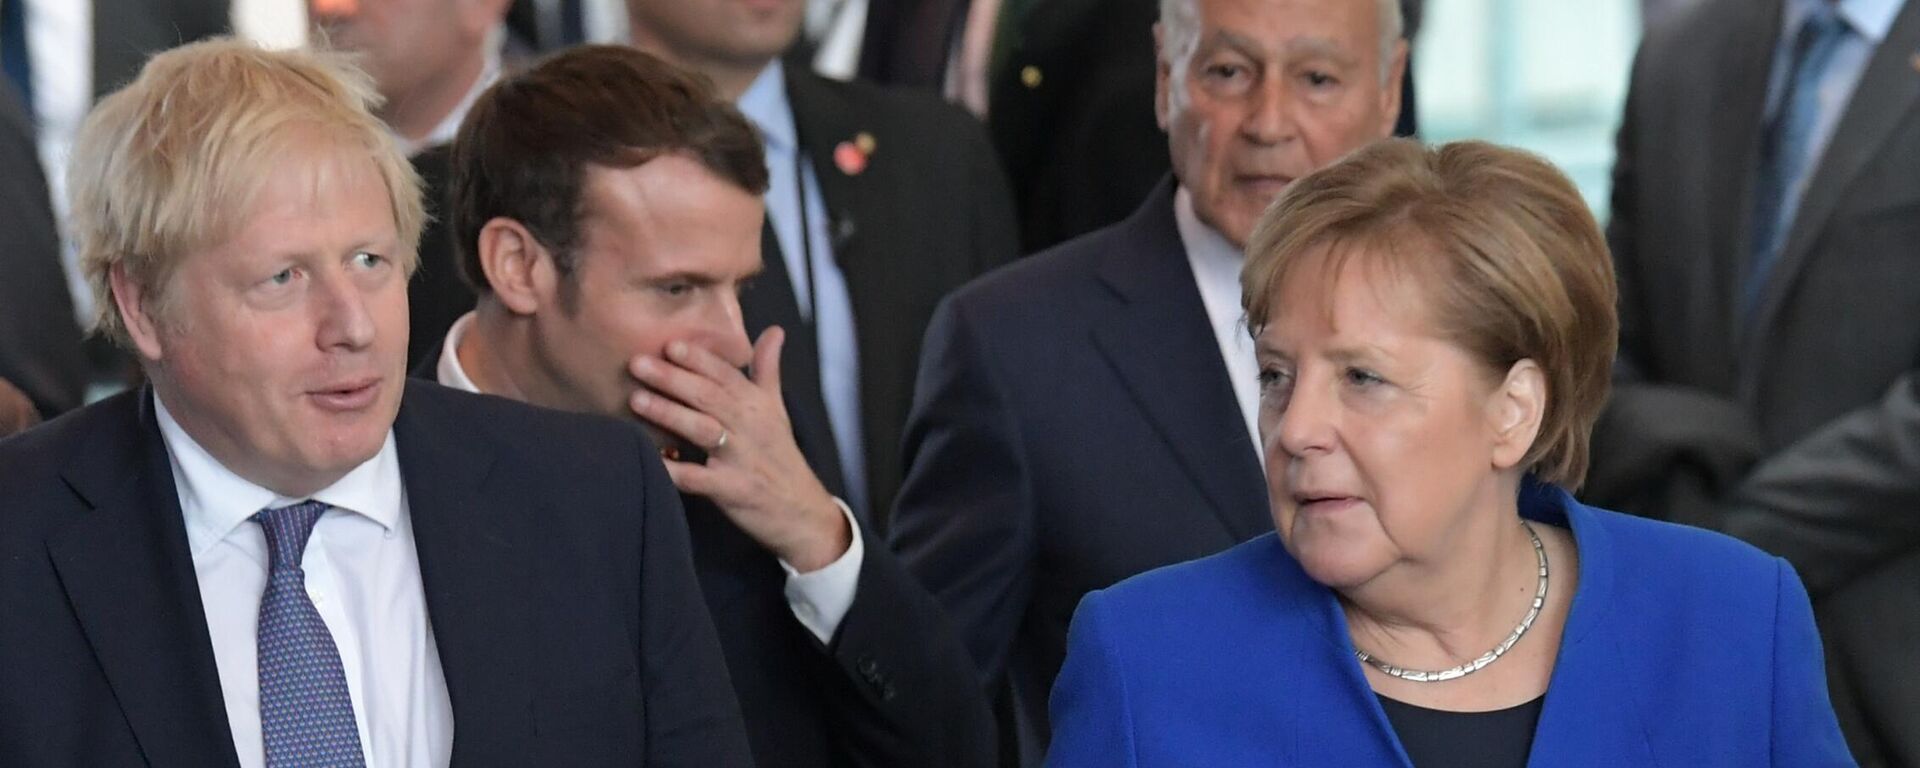 Lielbritānijas premjerministrs Boriss Džonsons, Francijas prezidents Emanuels Makrons, Vācijas kanclere Angela Merkele  - Sputnik Latvija, 1920, 07.12.2021